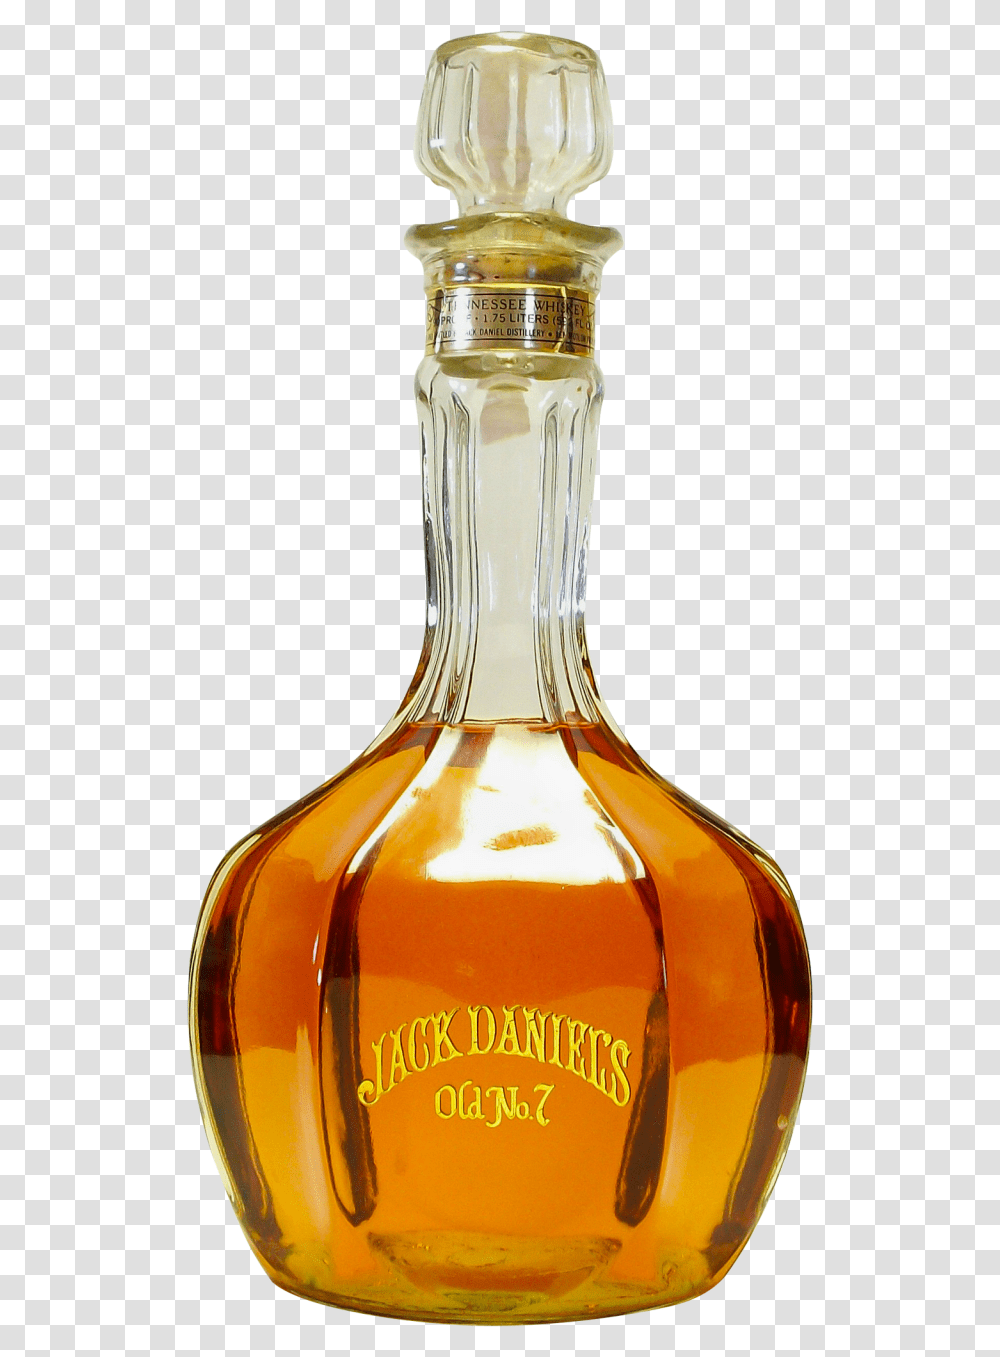 Jack Daniels Bottle, Liquor, Alcohol, Beverage, Mixer Transparent Png